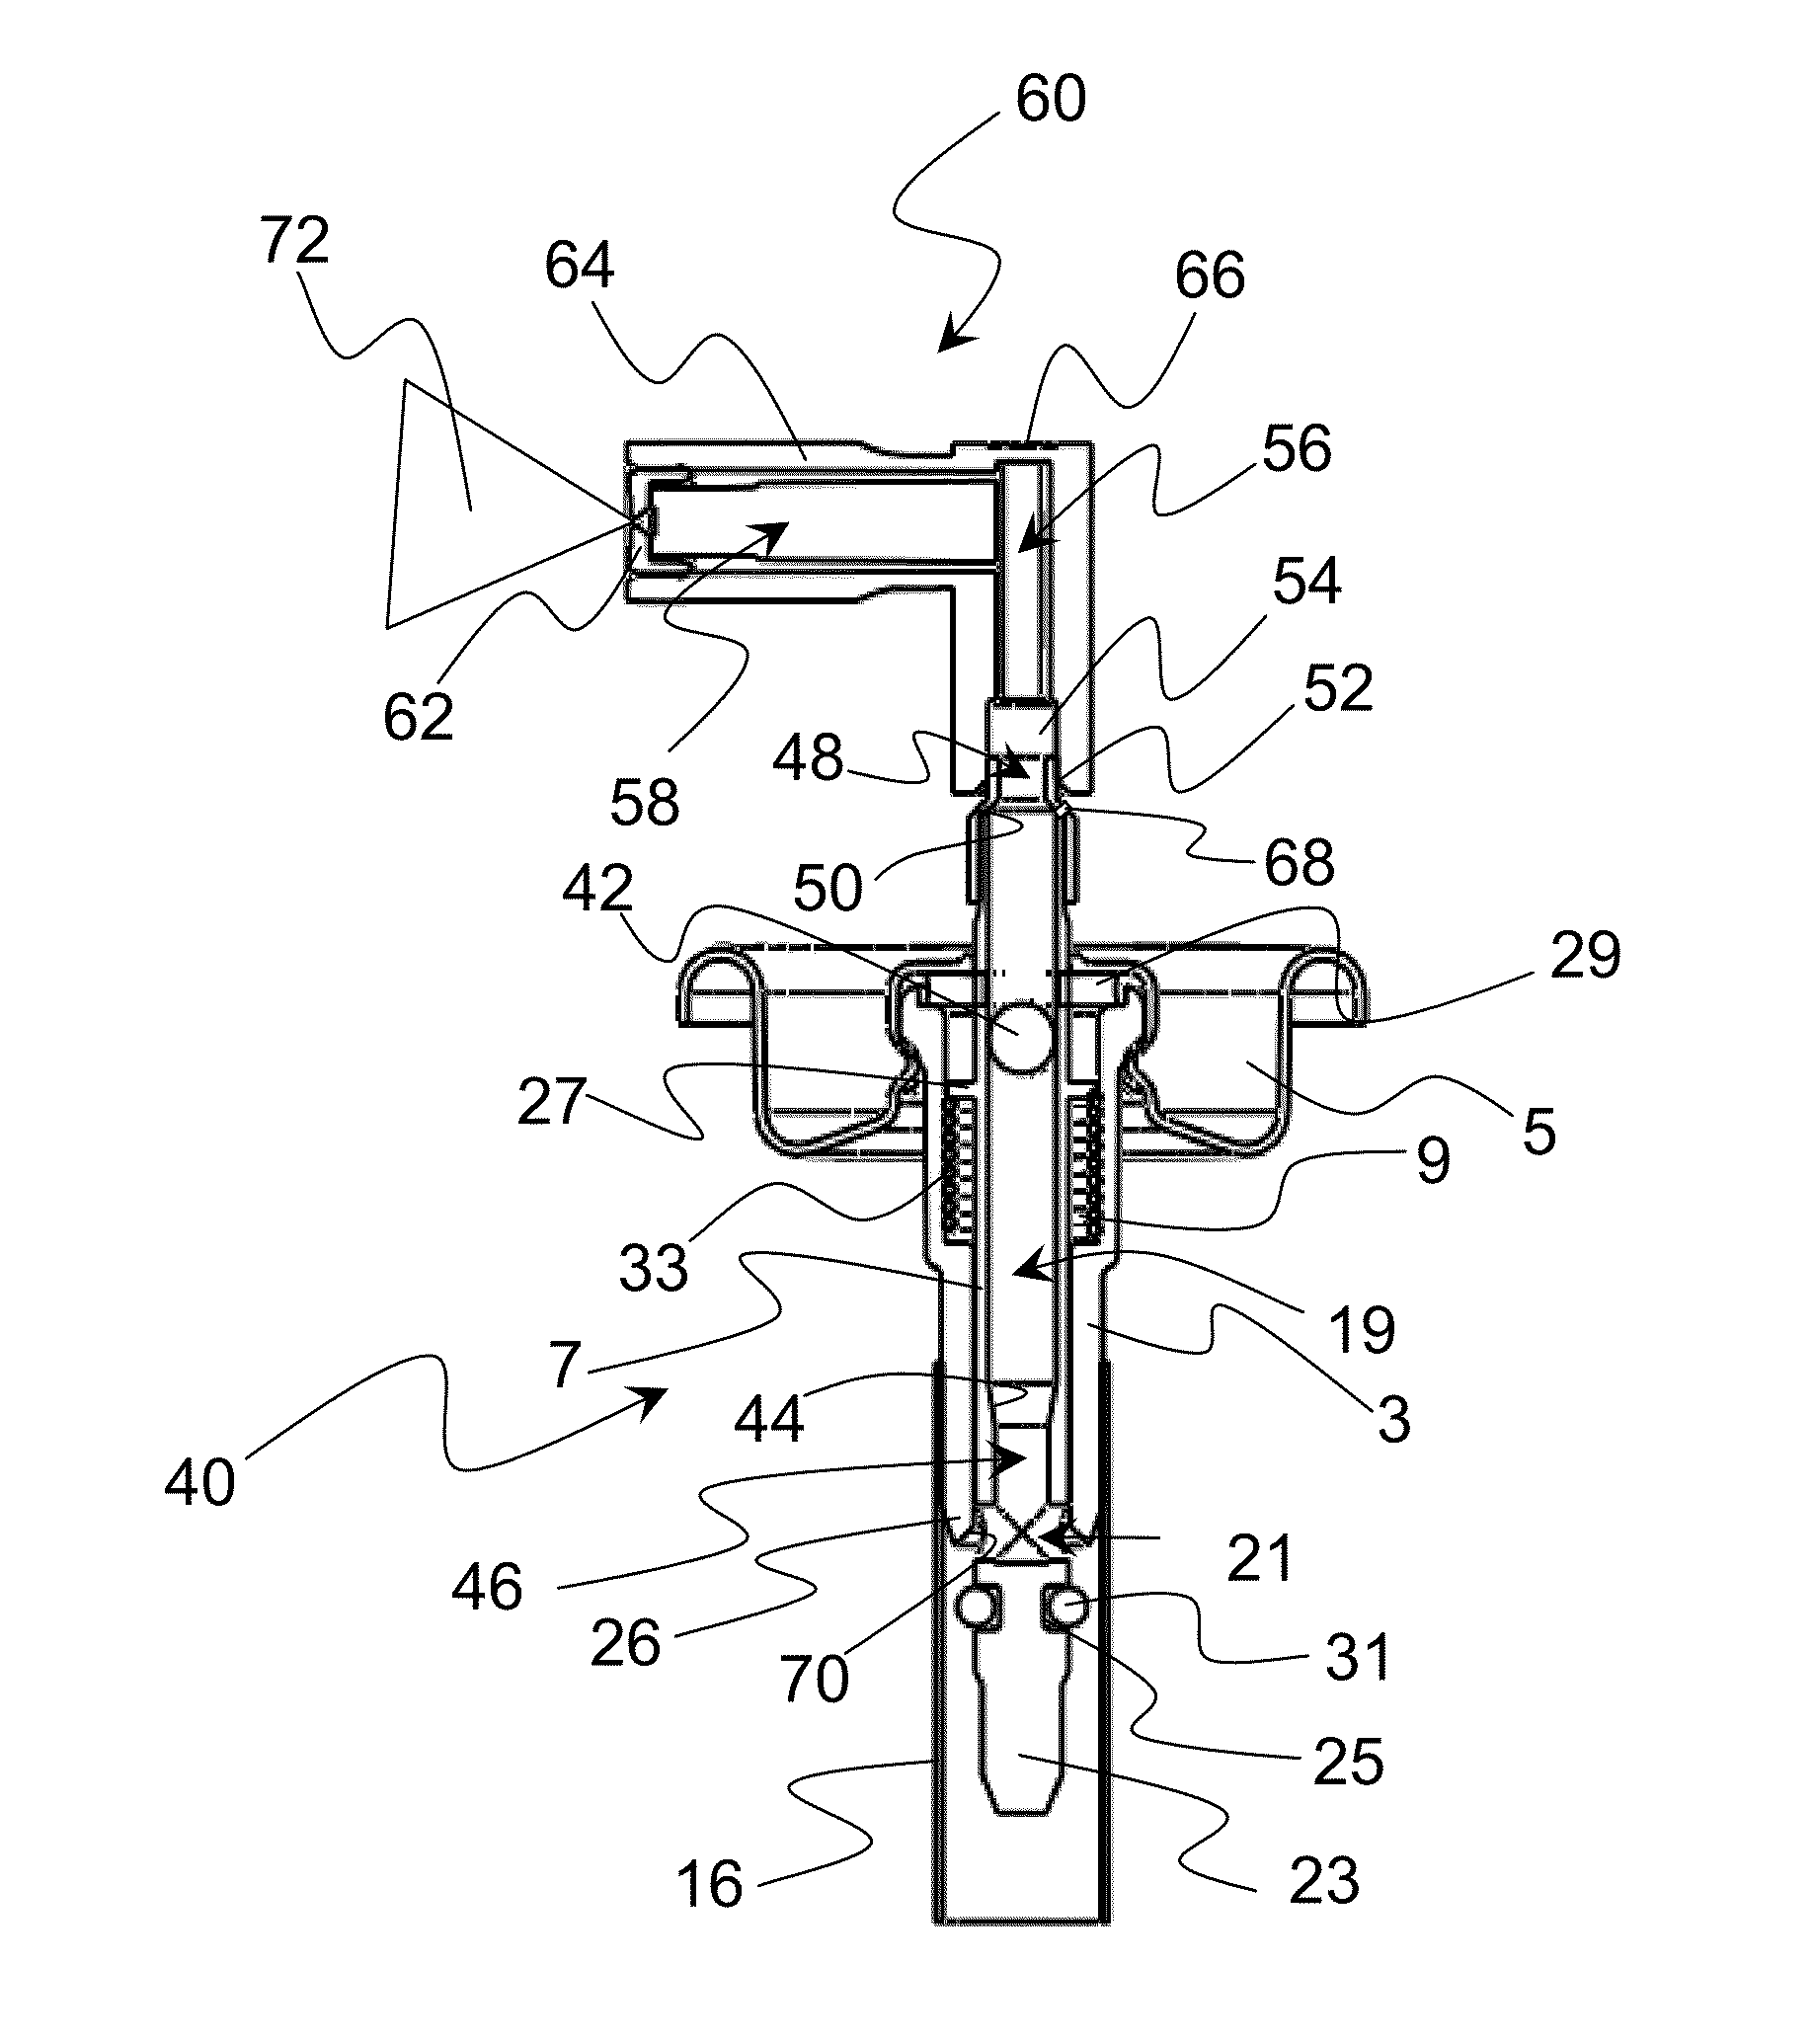 Metering valve